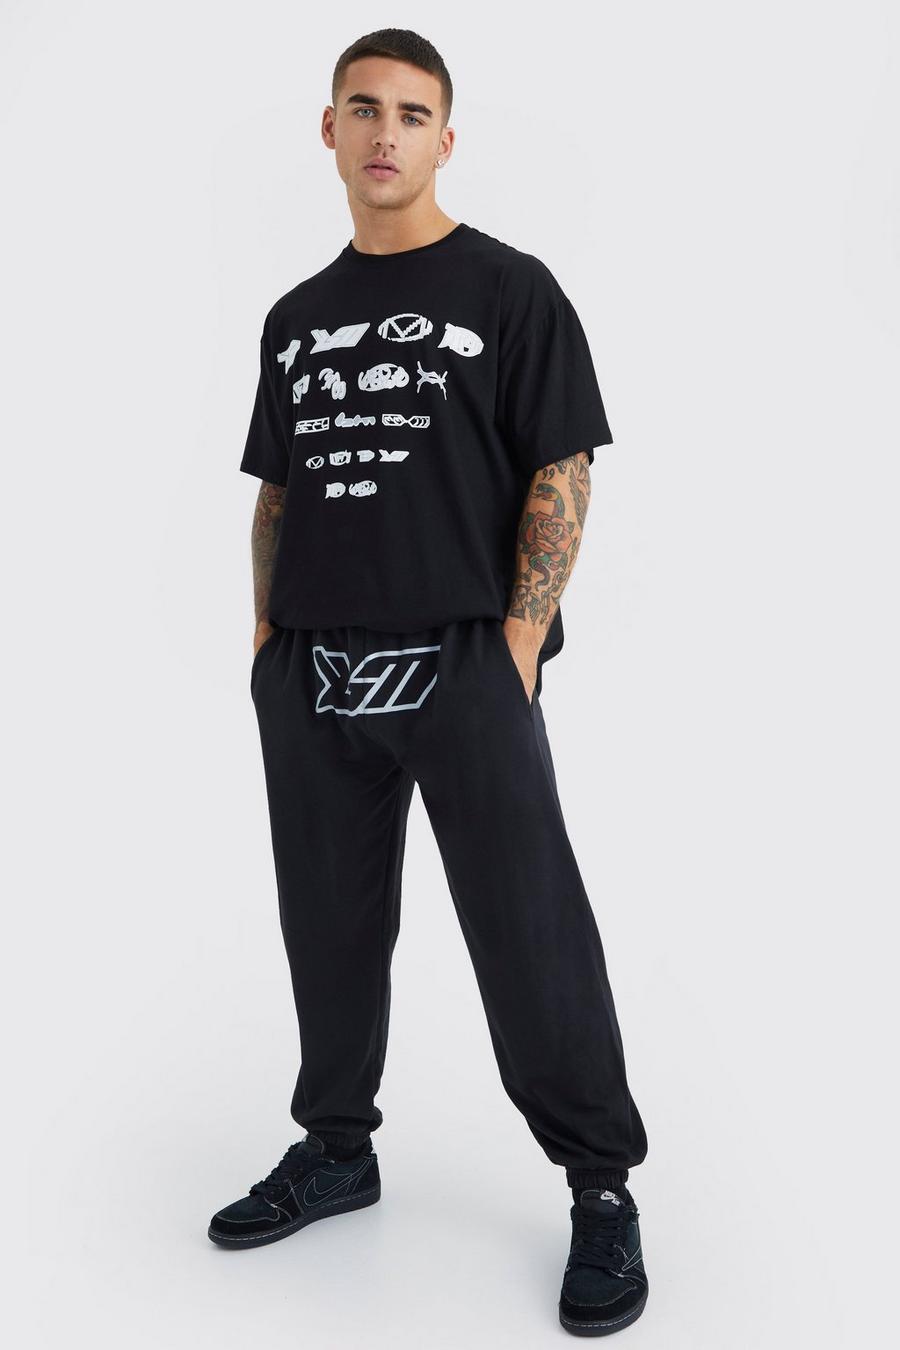 Black Oversized Bm Crotch Print T-shirt & Jogger Set